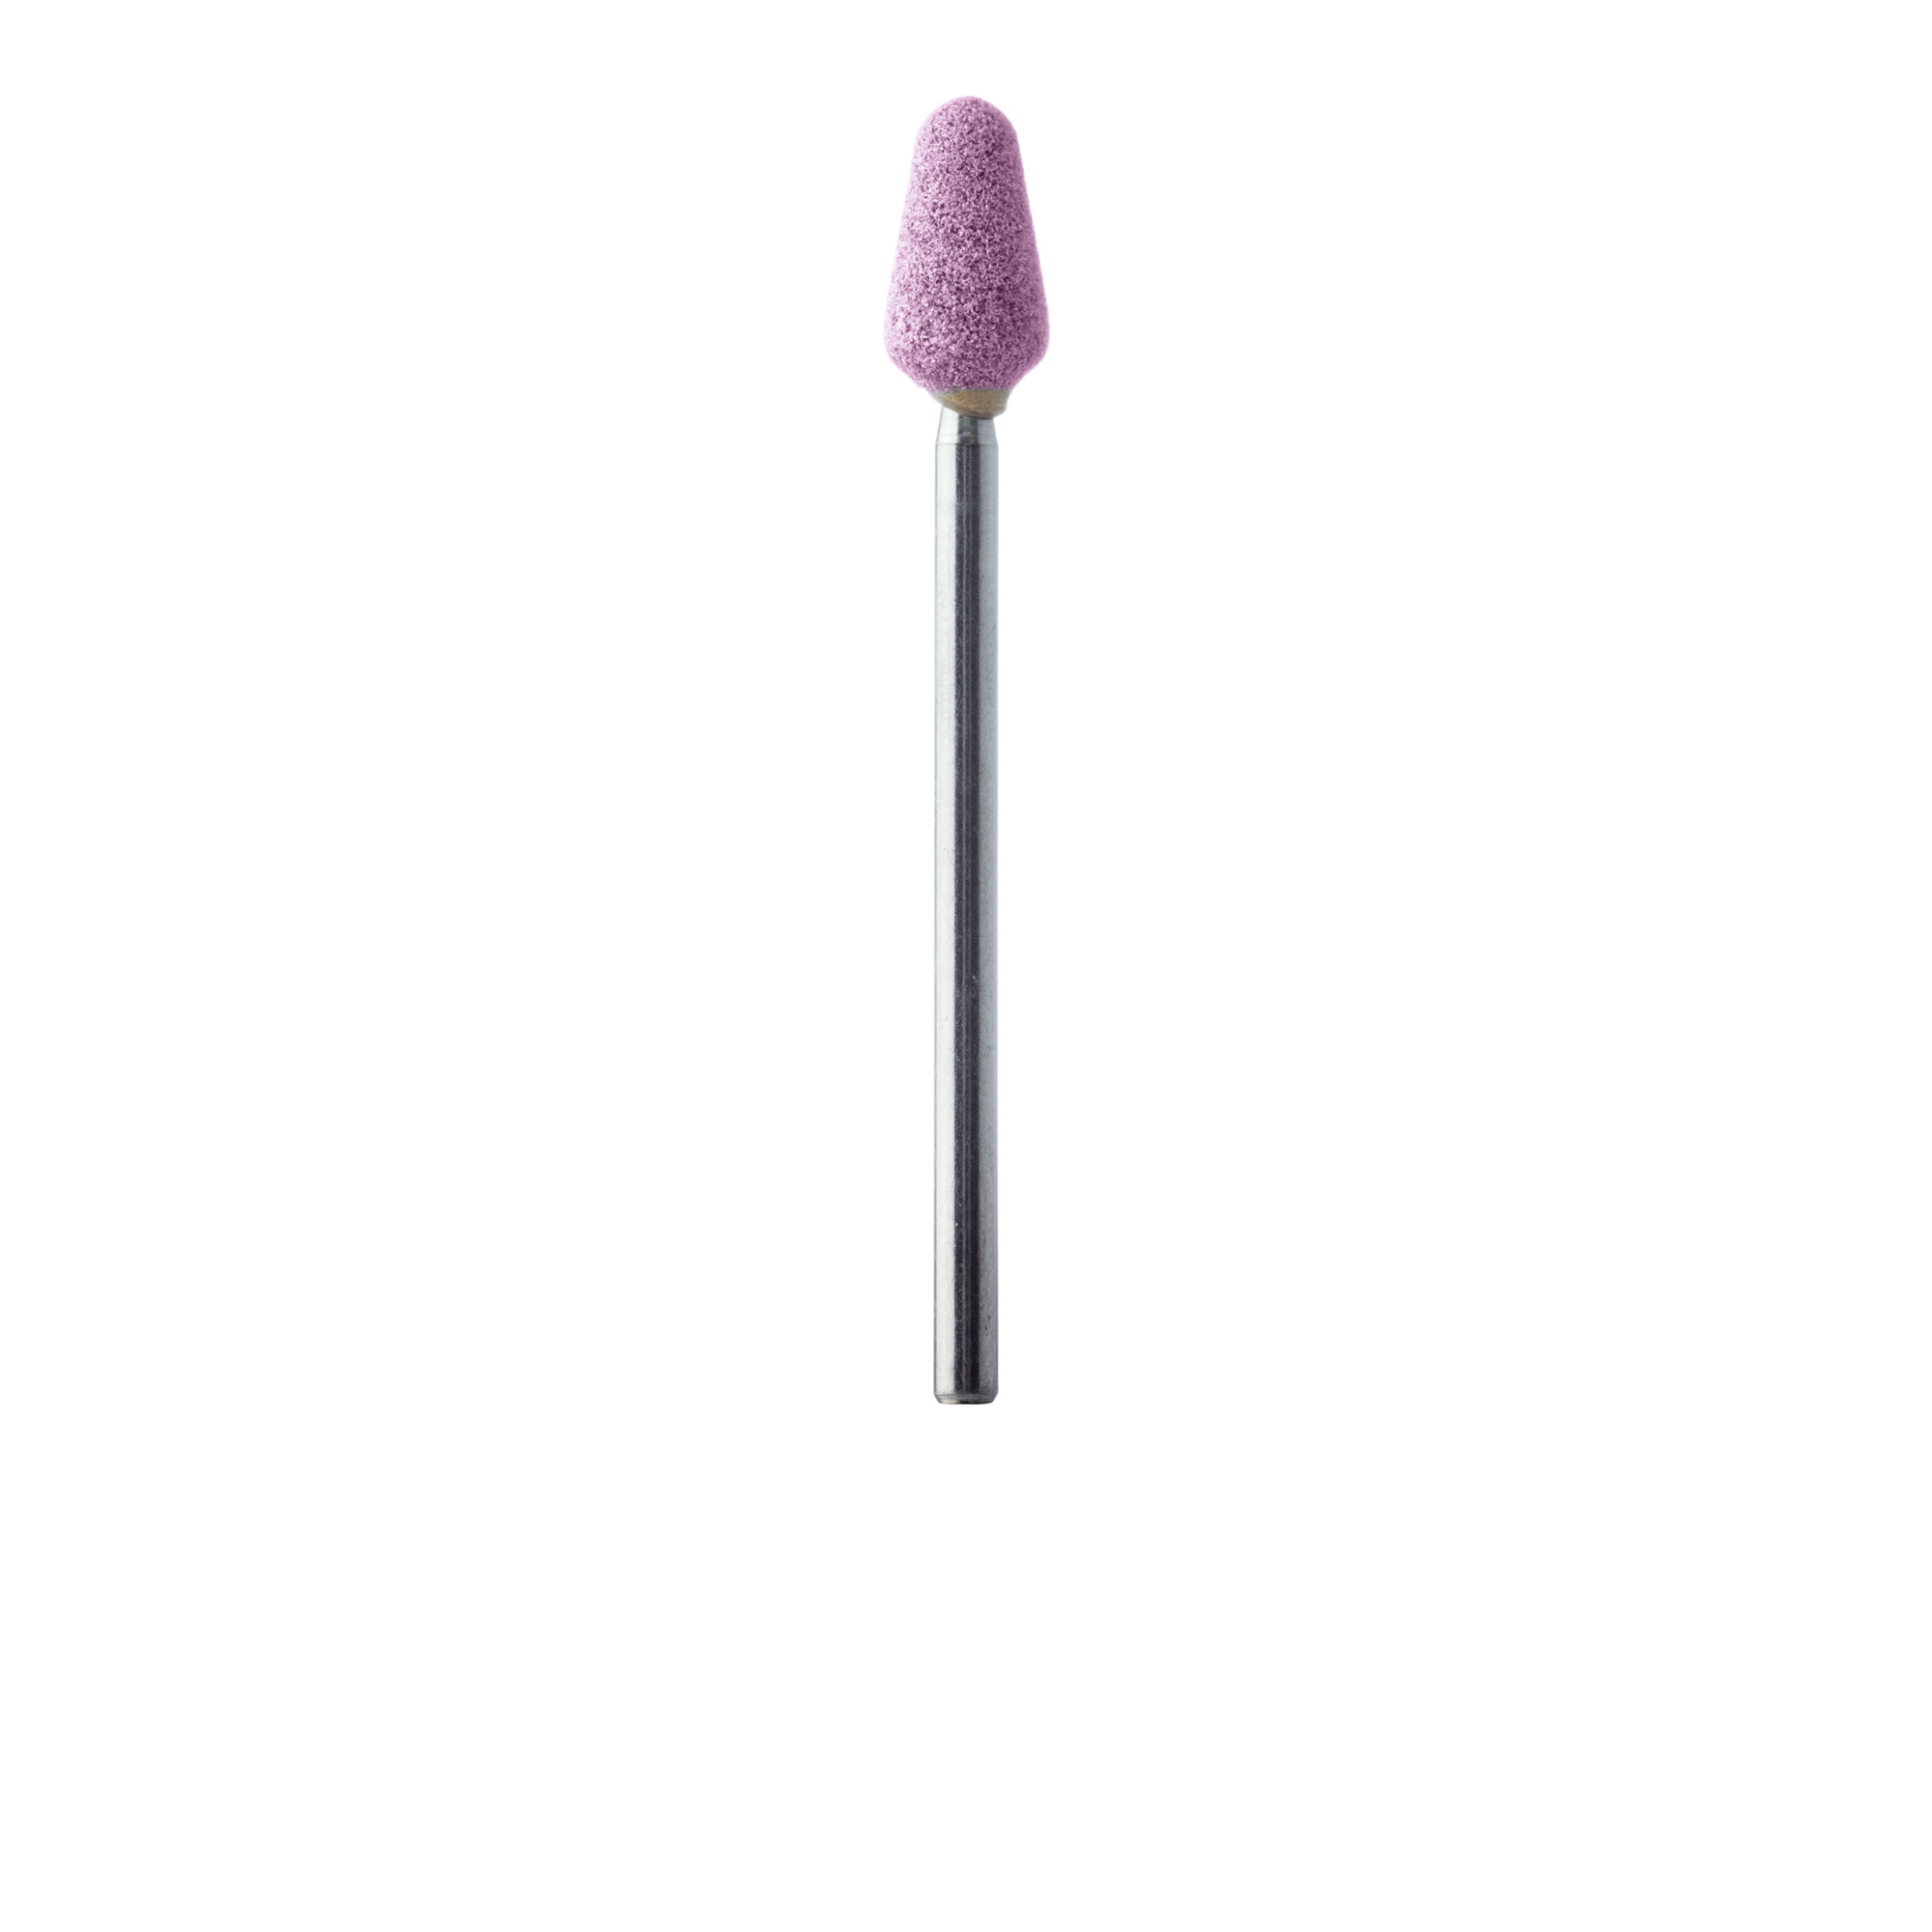 671-060-HP-P Abrasive, Pink, Wide Nose Cone, 6mm Ø, Medium, HP